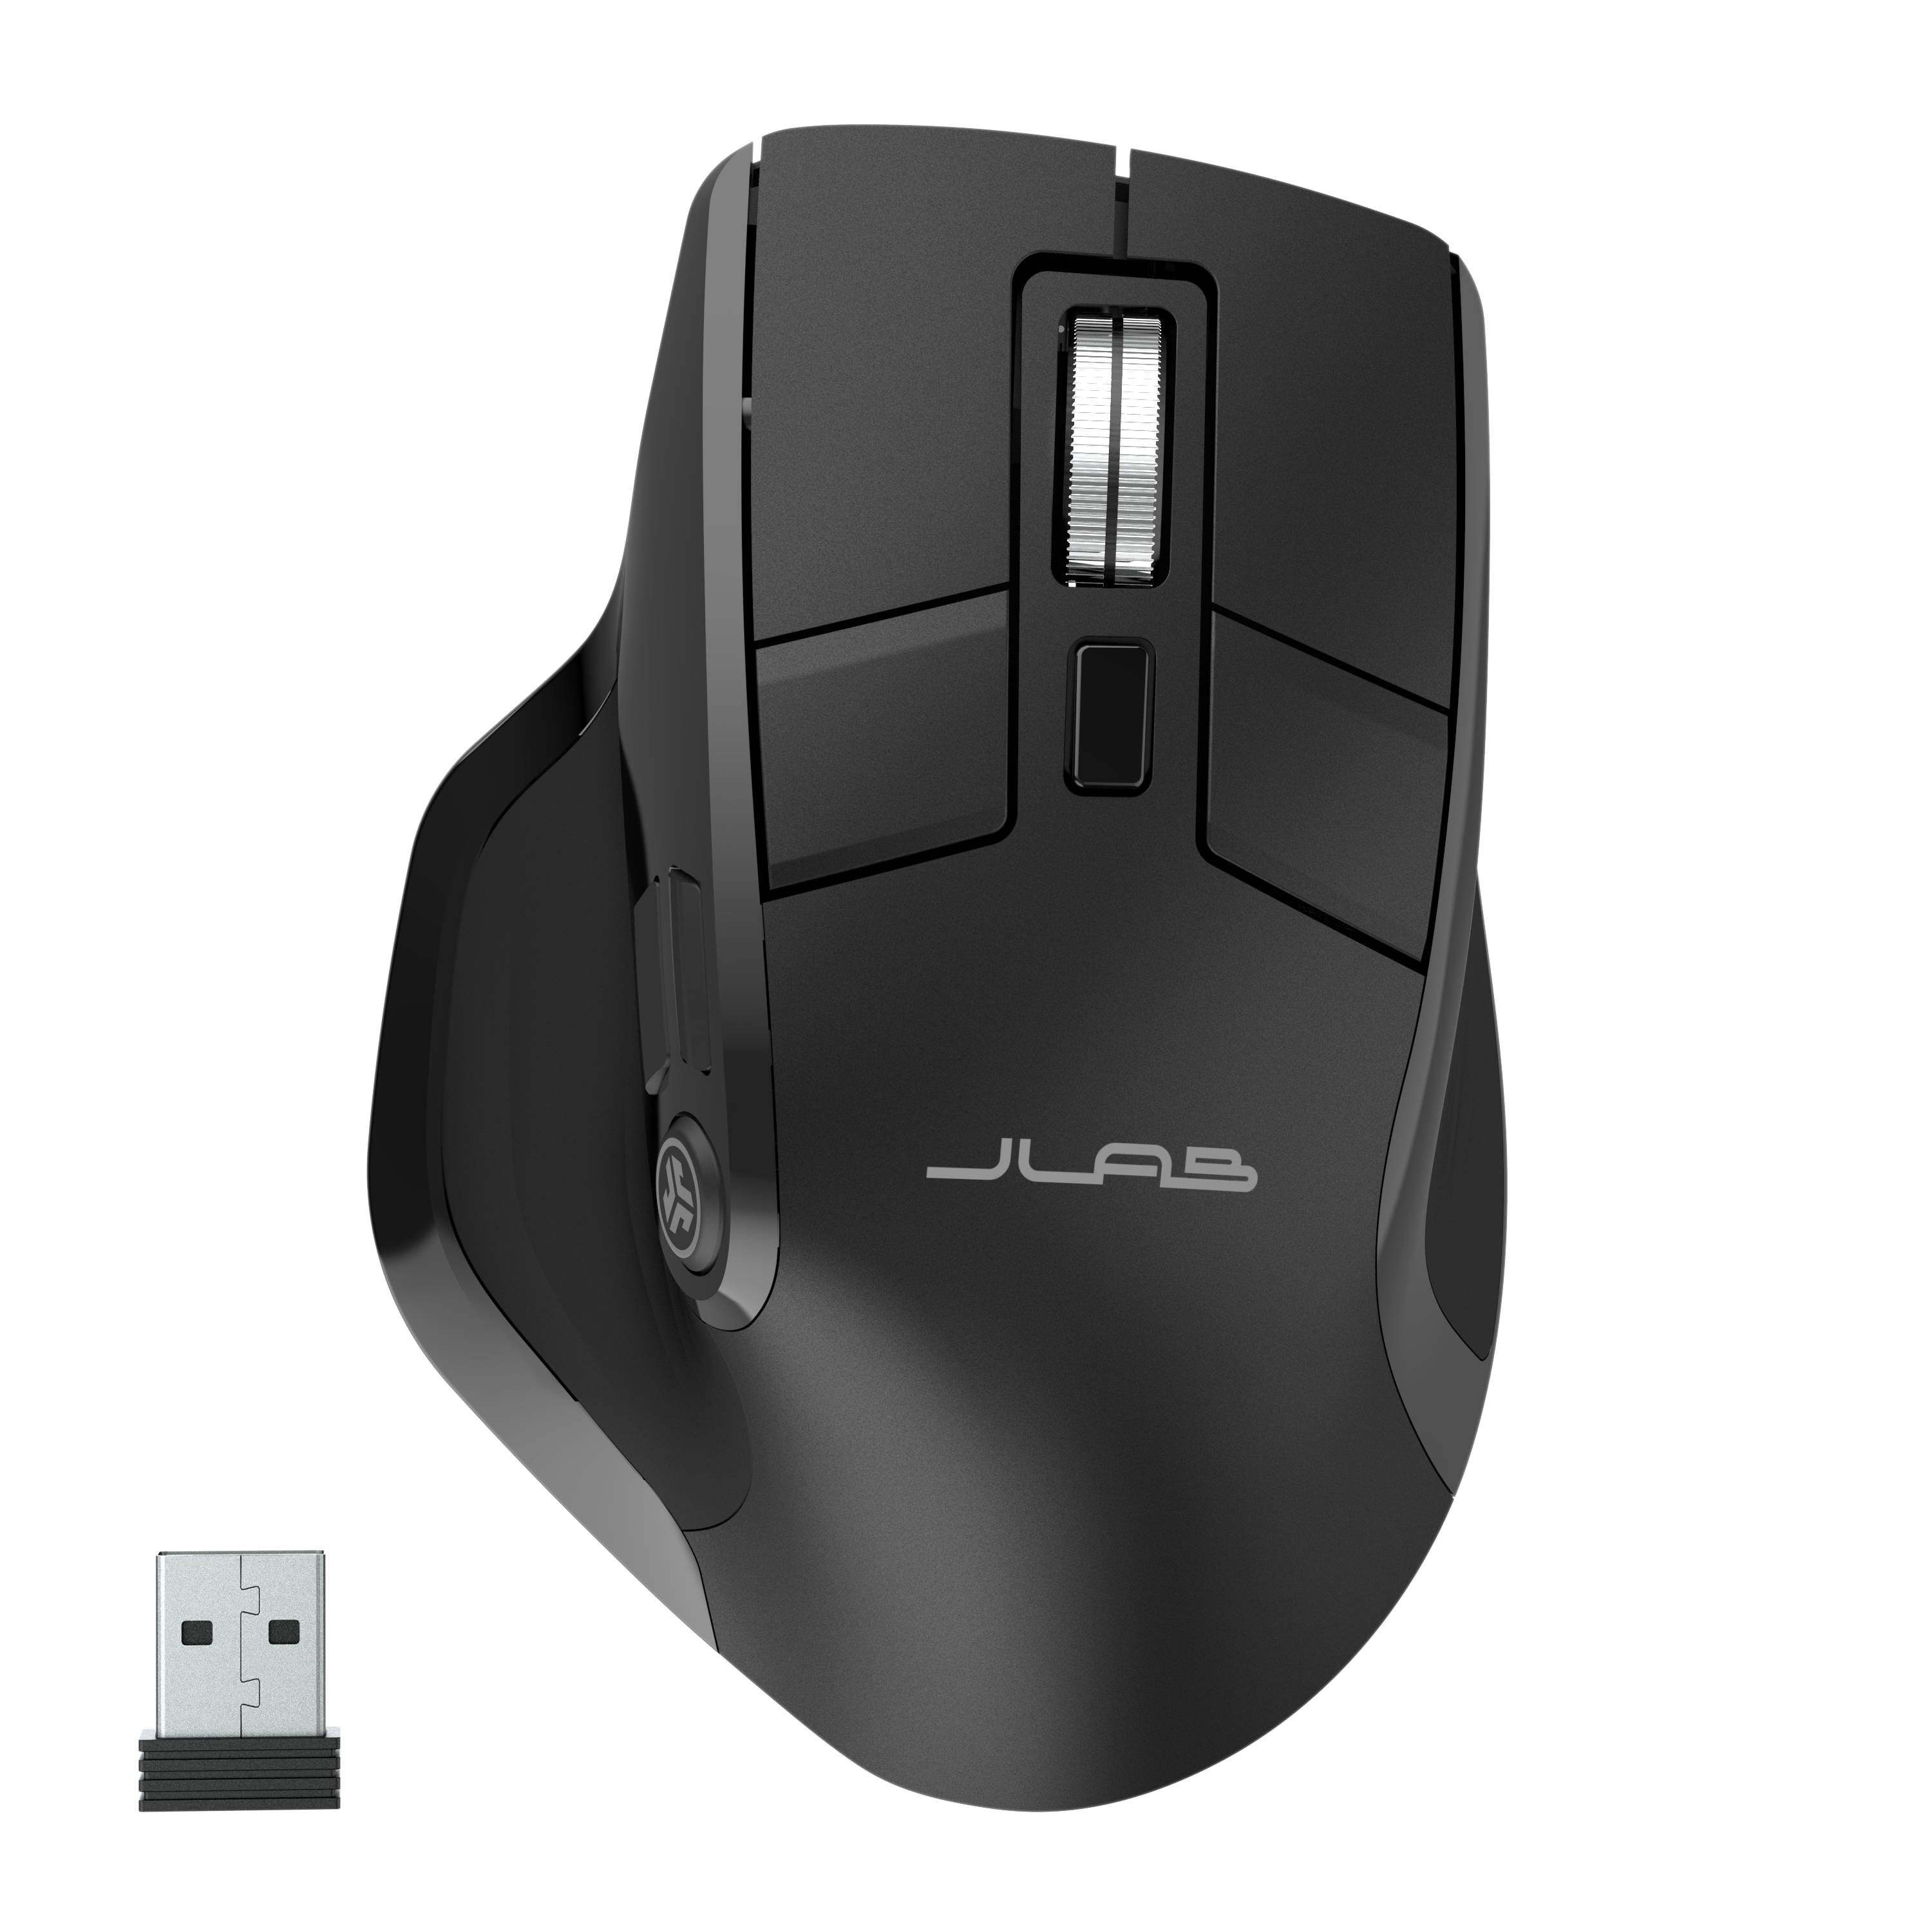 Chuột JLab không dây Bluetooth pin sạc Epic màu đen - Hàng chính hãng - Bảo hành 2 năm